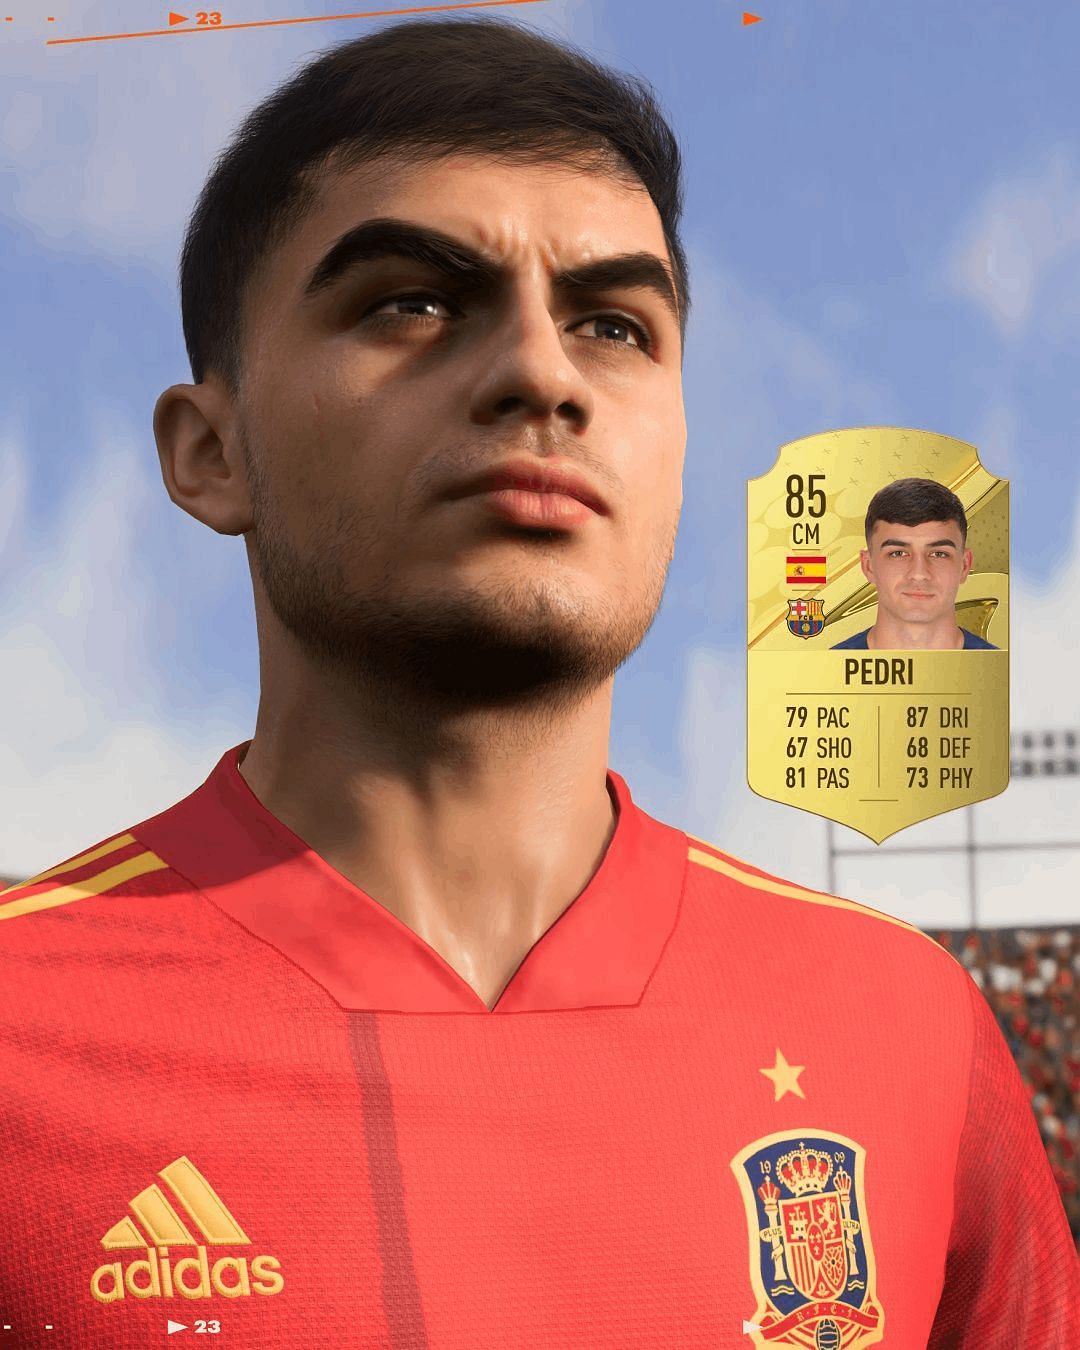 Pedri official FIFA 23 player card (Image via EA Sports FIFA)